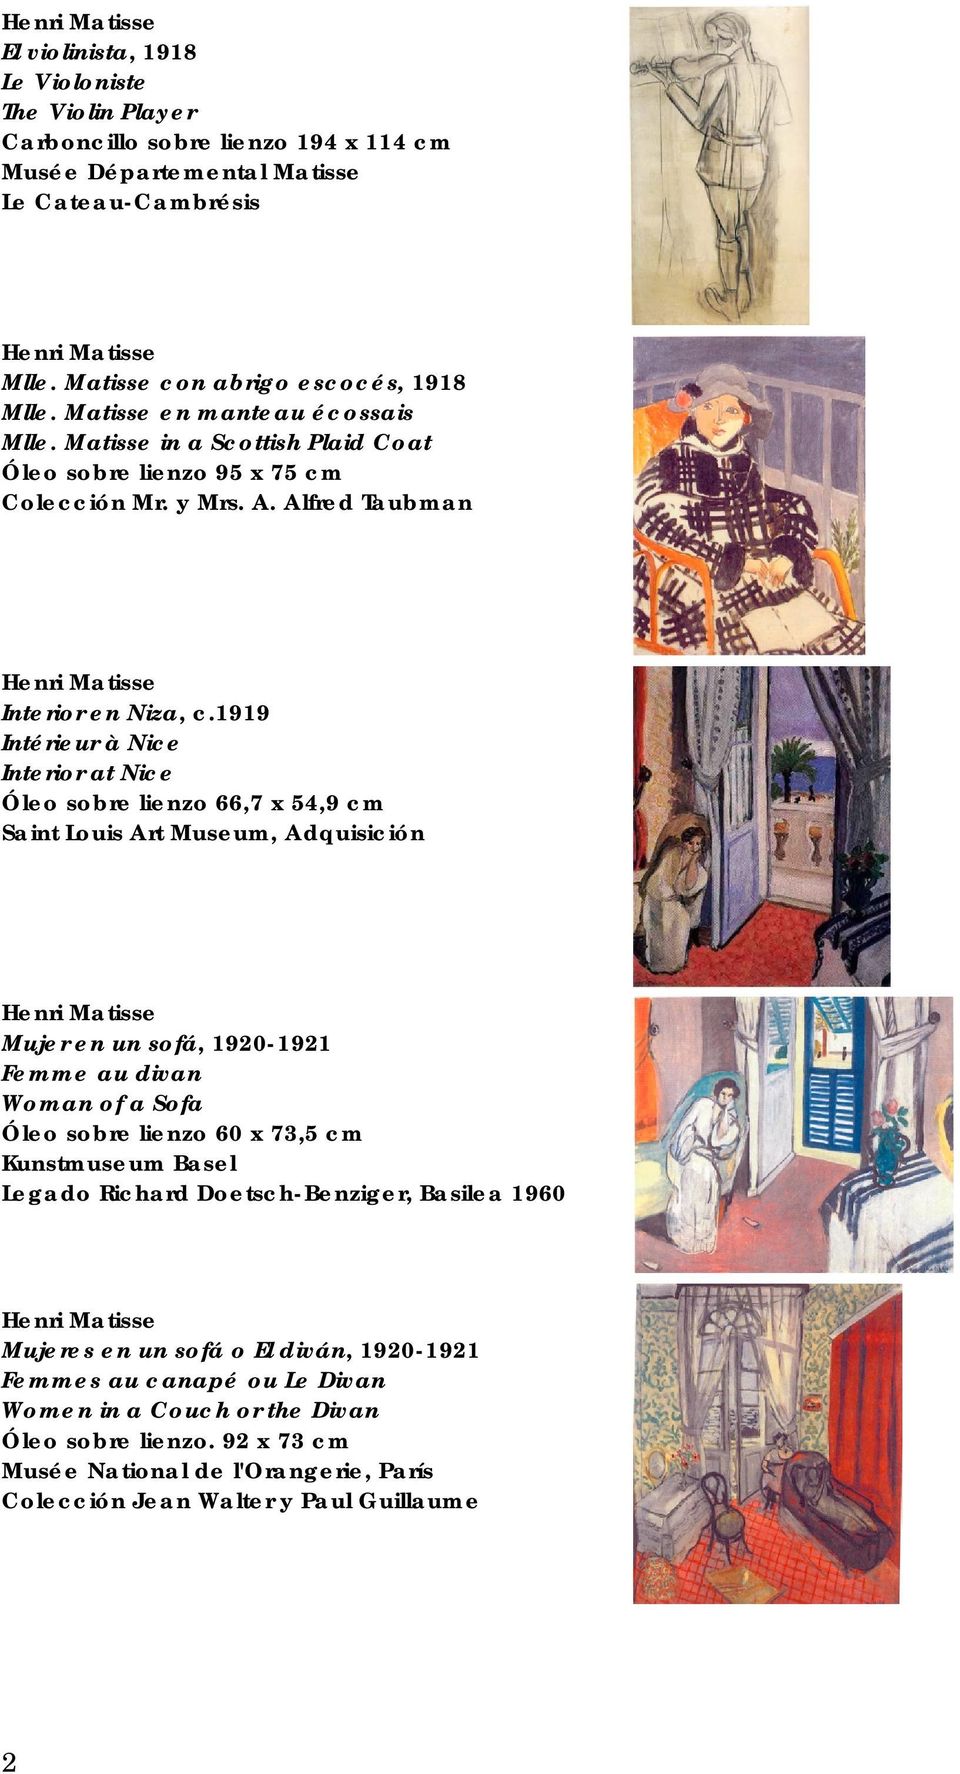 1919 Intérieur à Nice Interior at Nice Óleo sobre lienzo 66,7 x 54,9 cm Saint Louis Art Museum, Adquisición Mujer en un sofá, 1920-1921 Femme au divan Woman of a Sofa Óleo sobre lienzo 60 x 73,5 cm